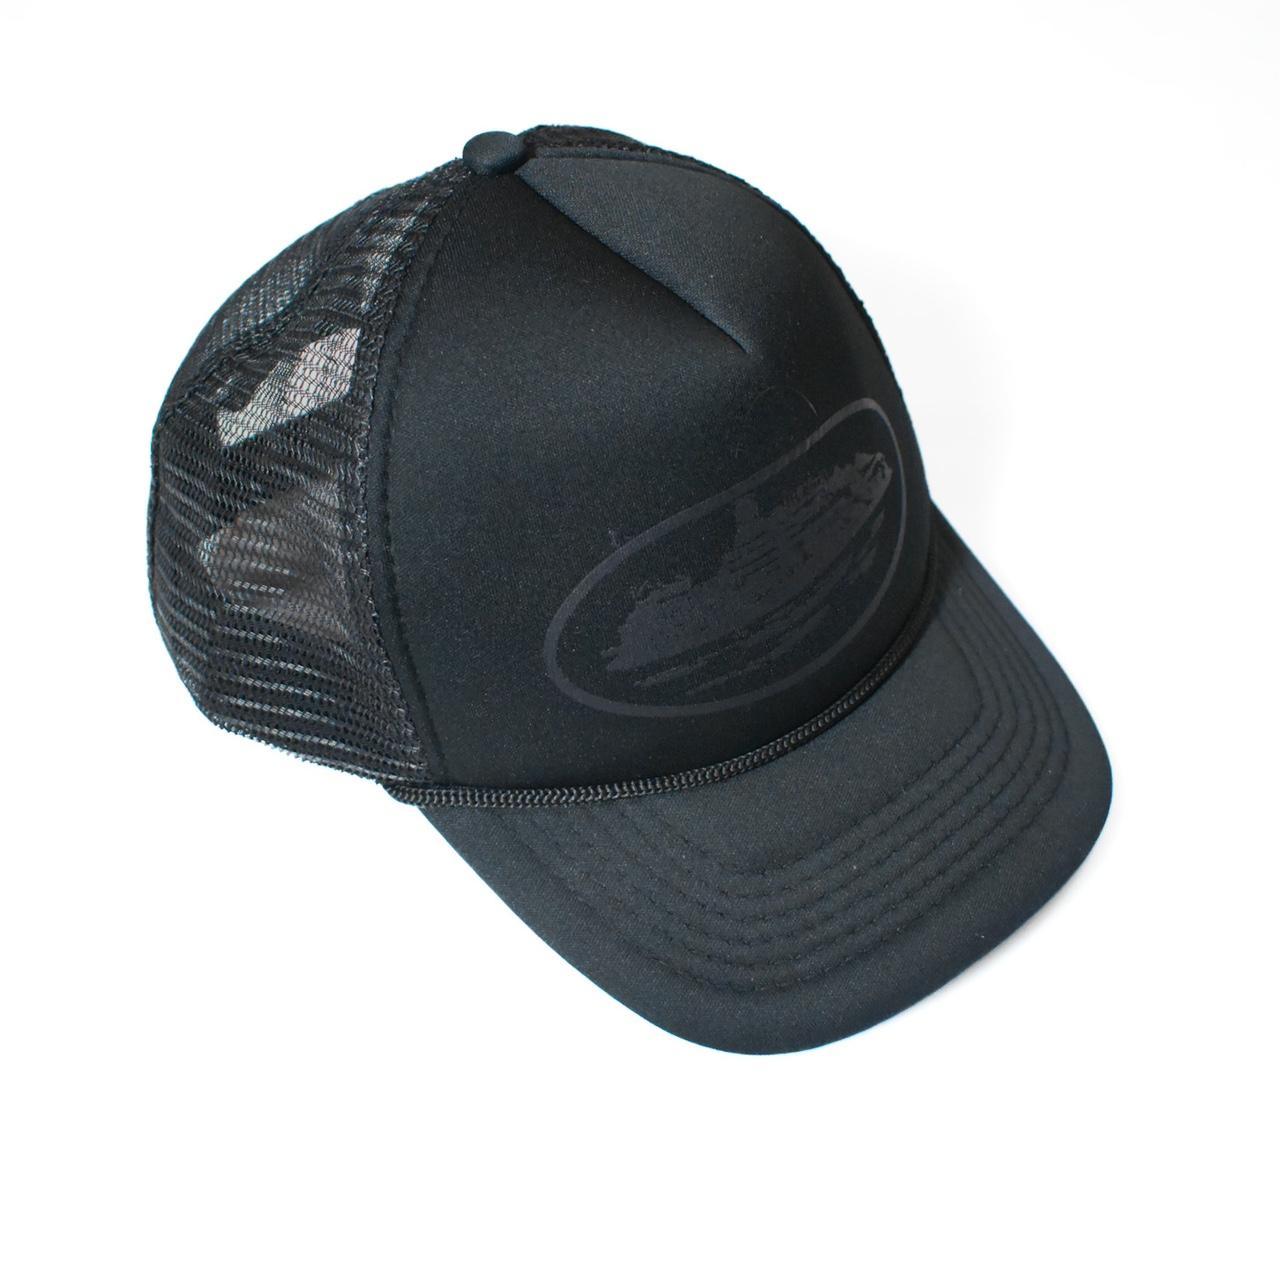 Corteiz Men's Black Hat